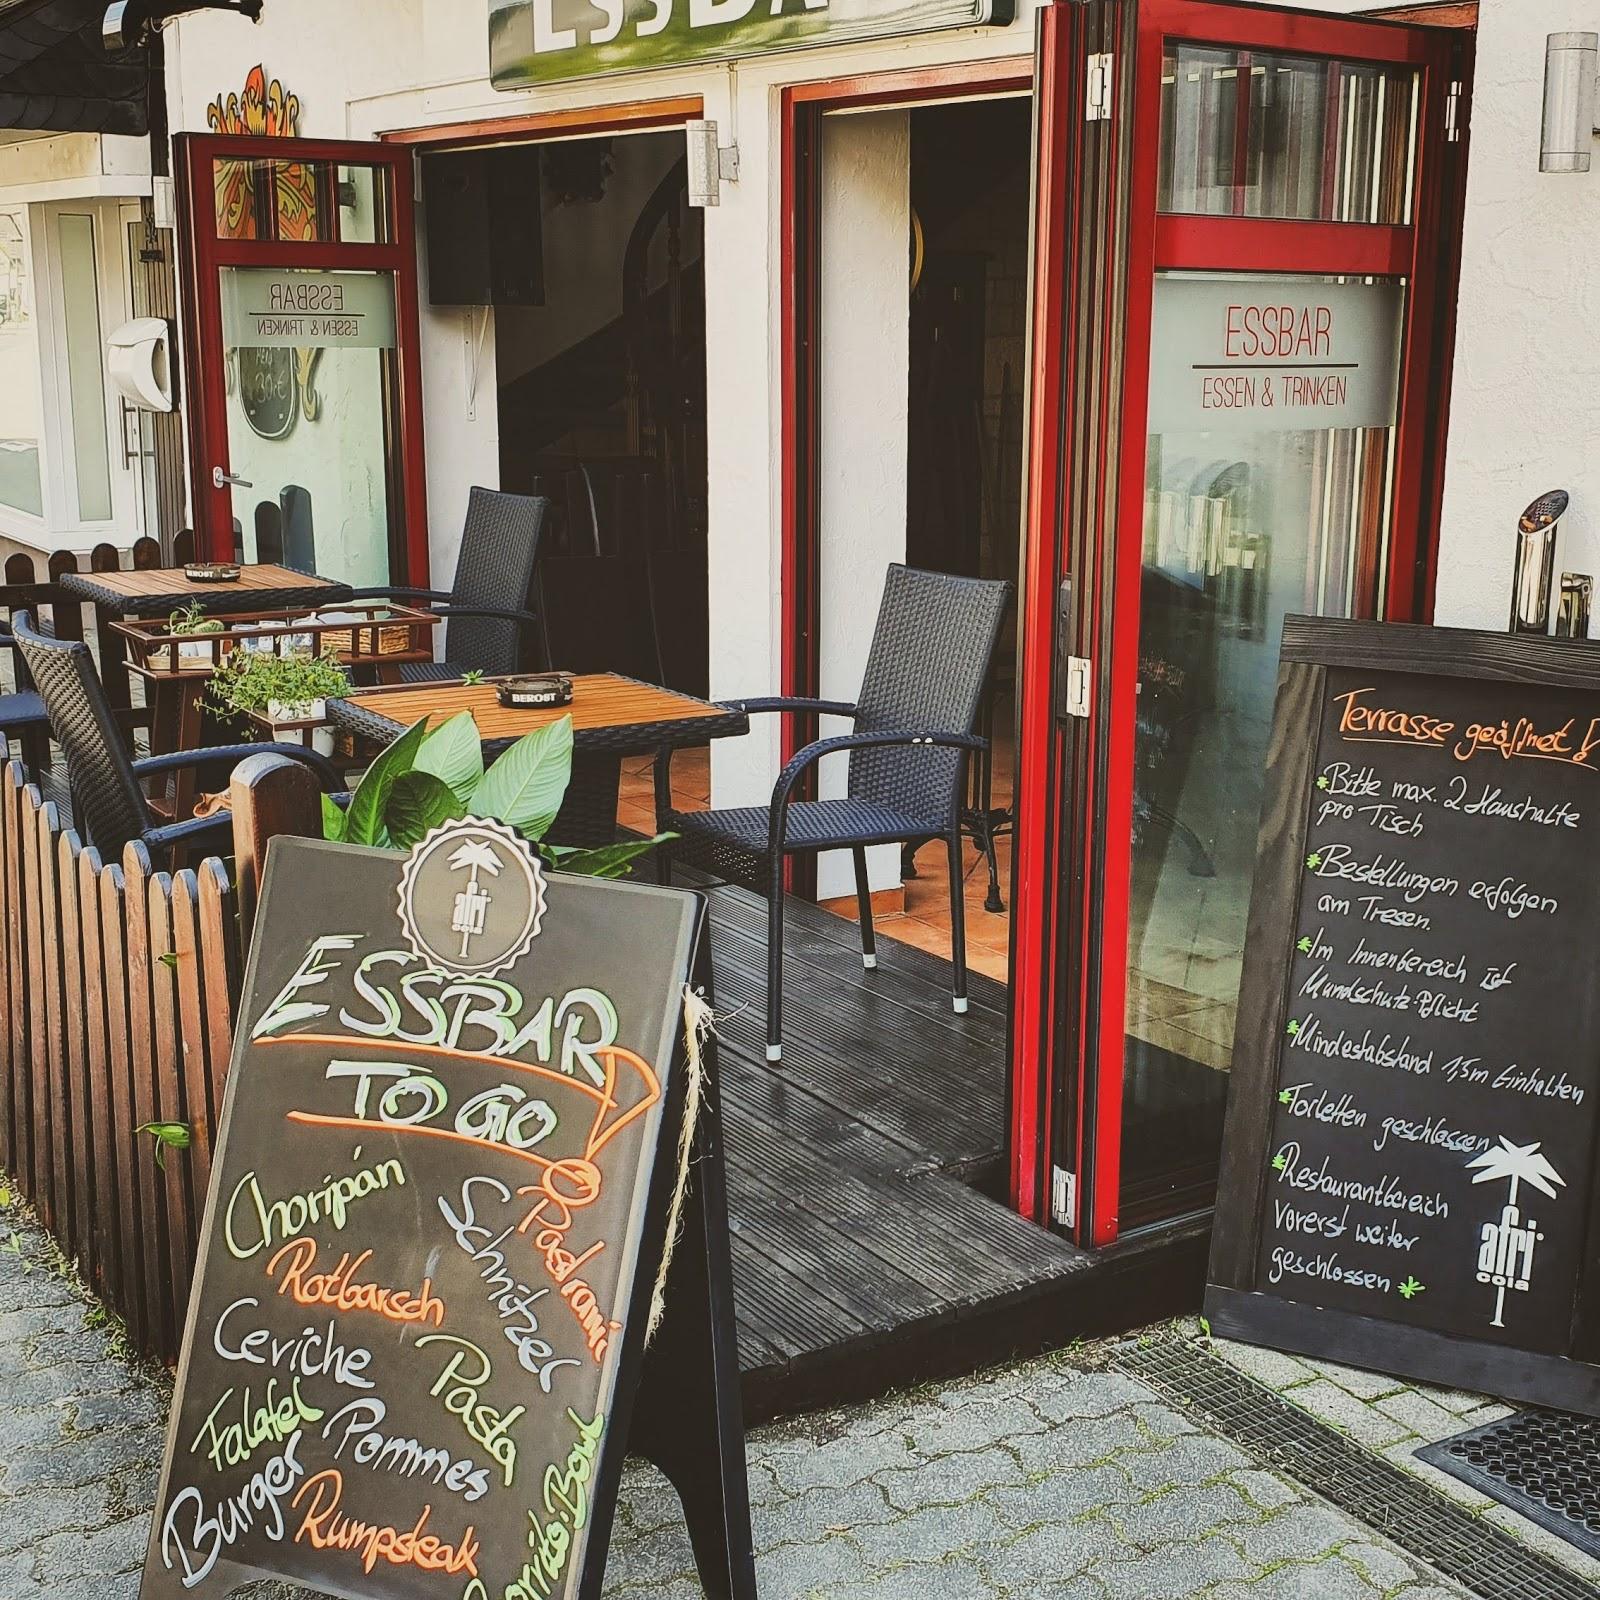 Restaurant "EssBar" in  Winterberg